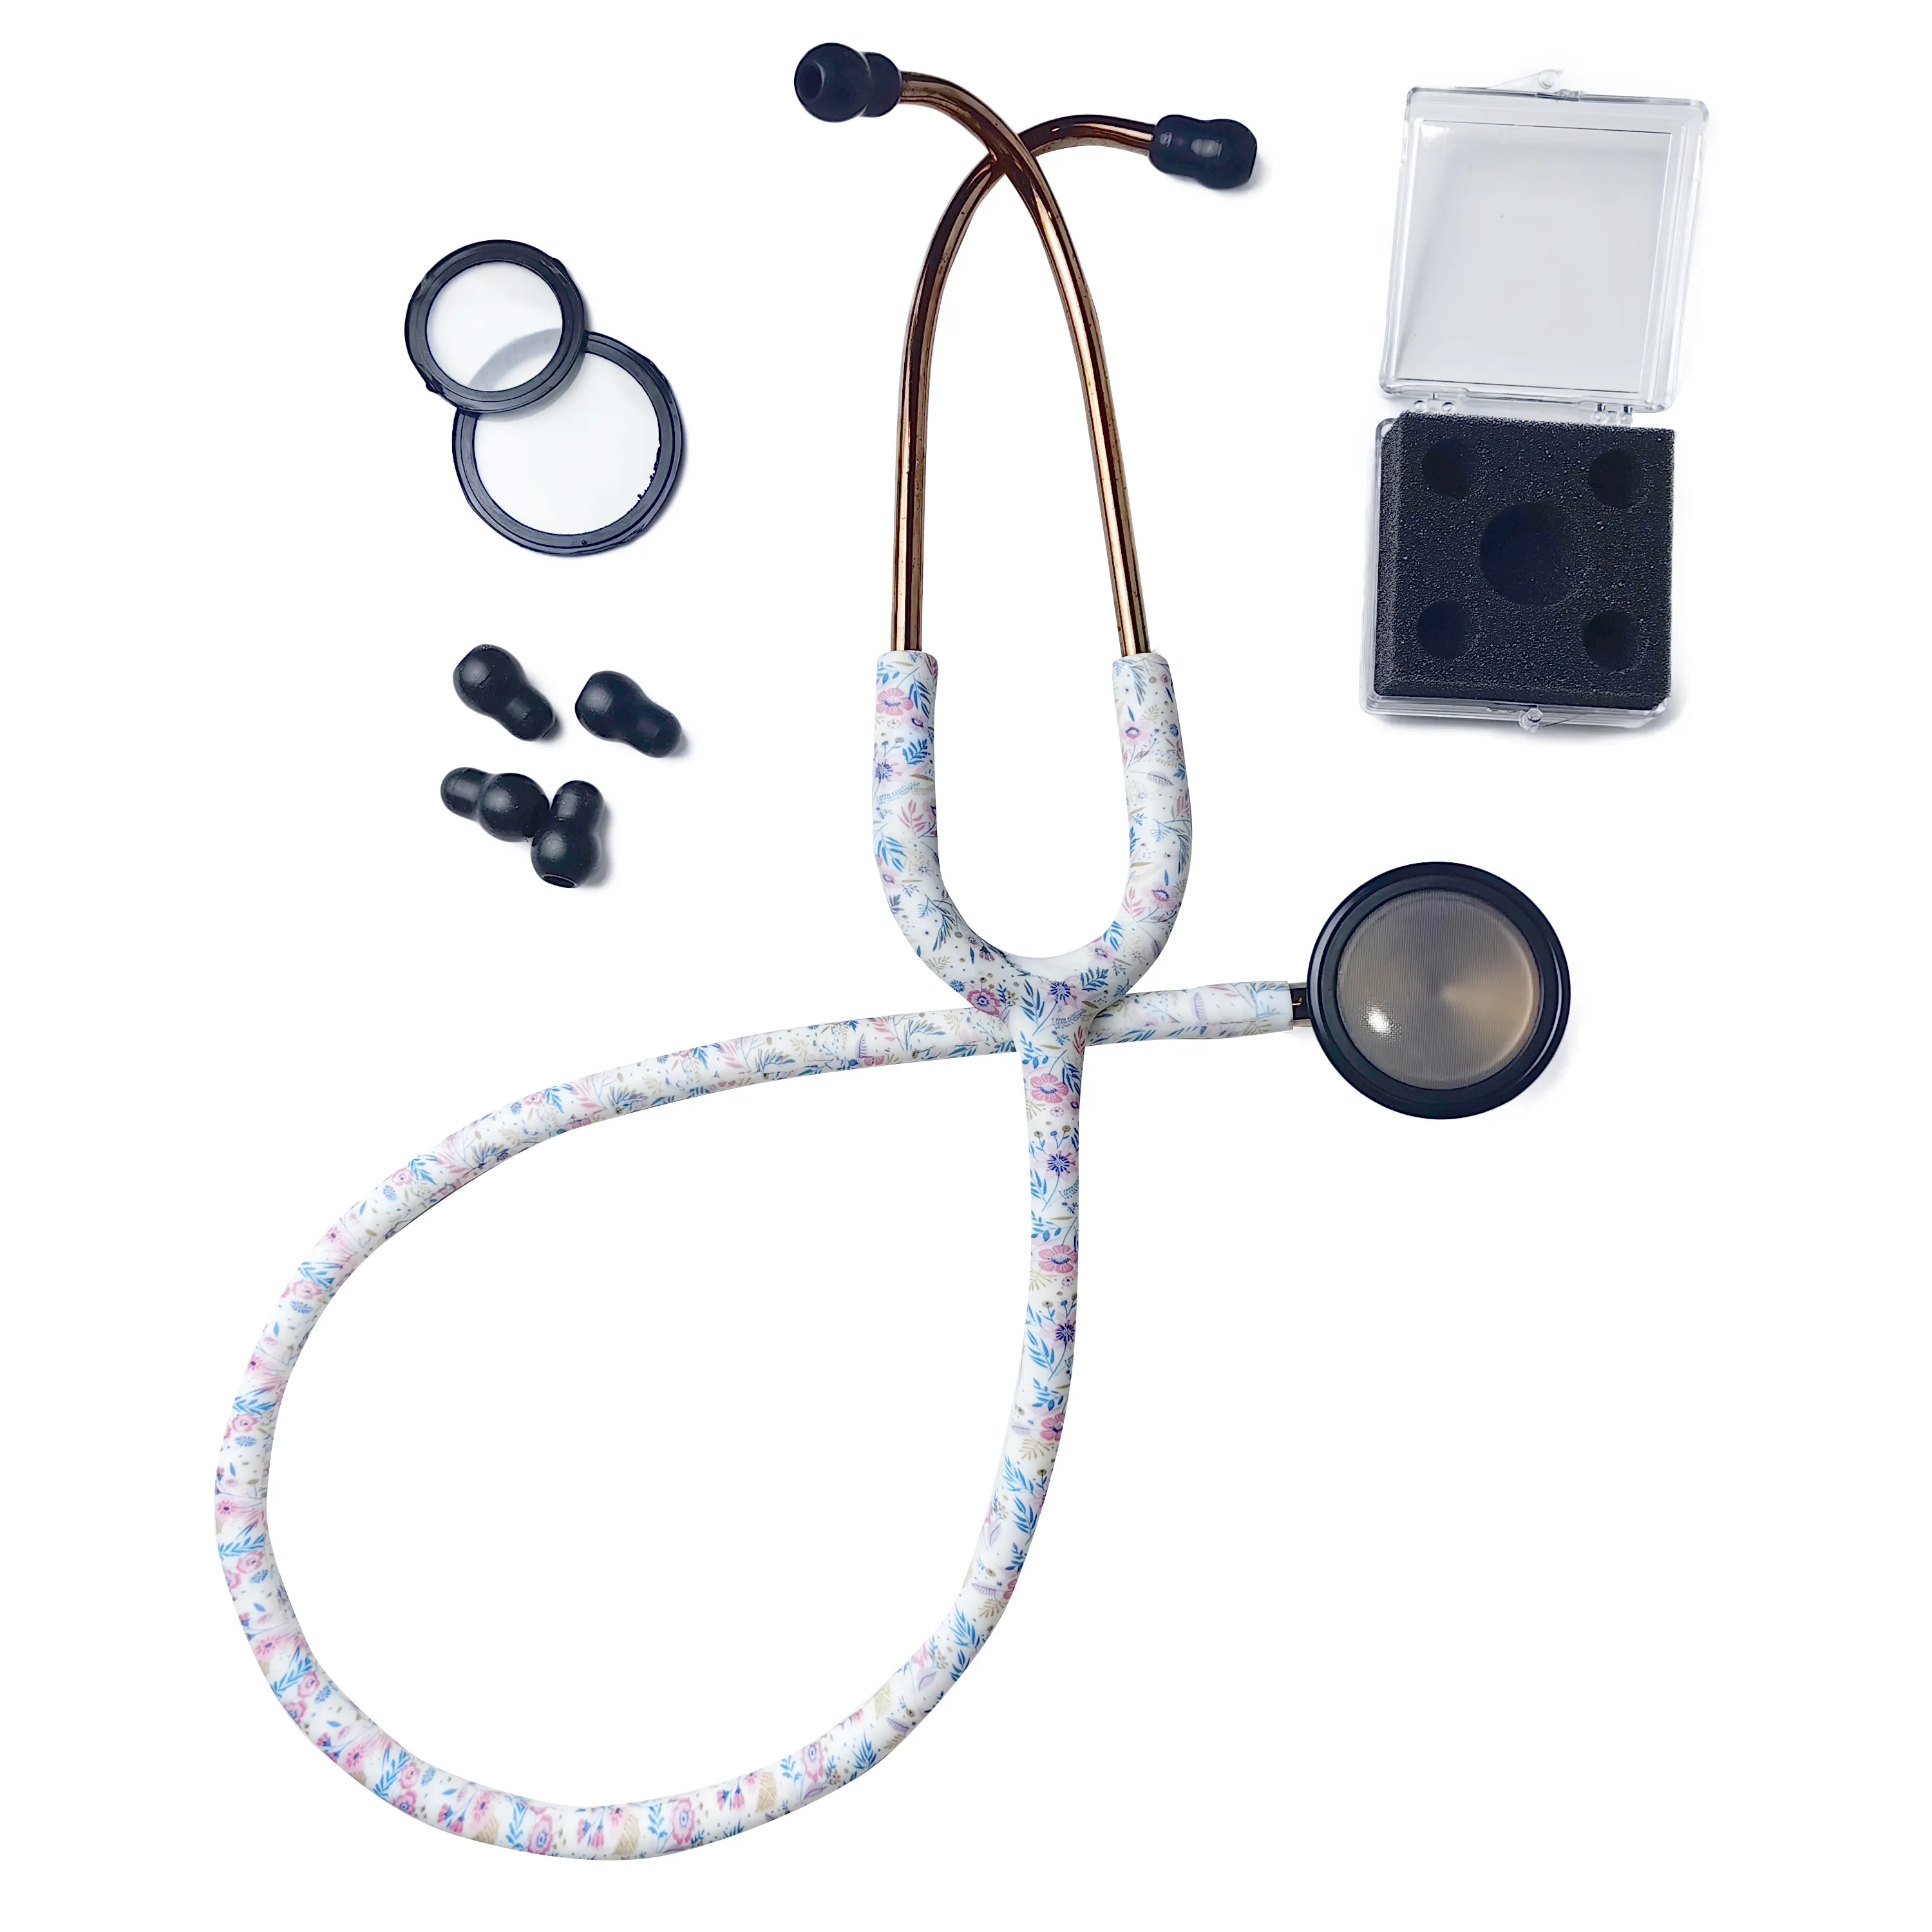 Multifunzione doppio lato diaframma su medico ospedale adulto classico acciaio inossidabile tubo colorato stetoscopio professionale